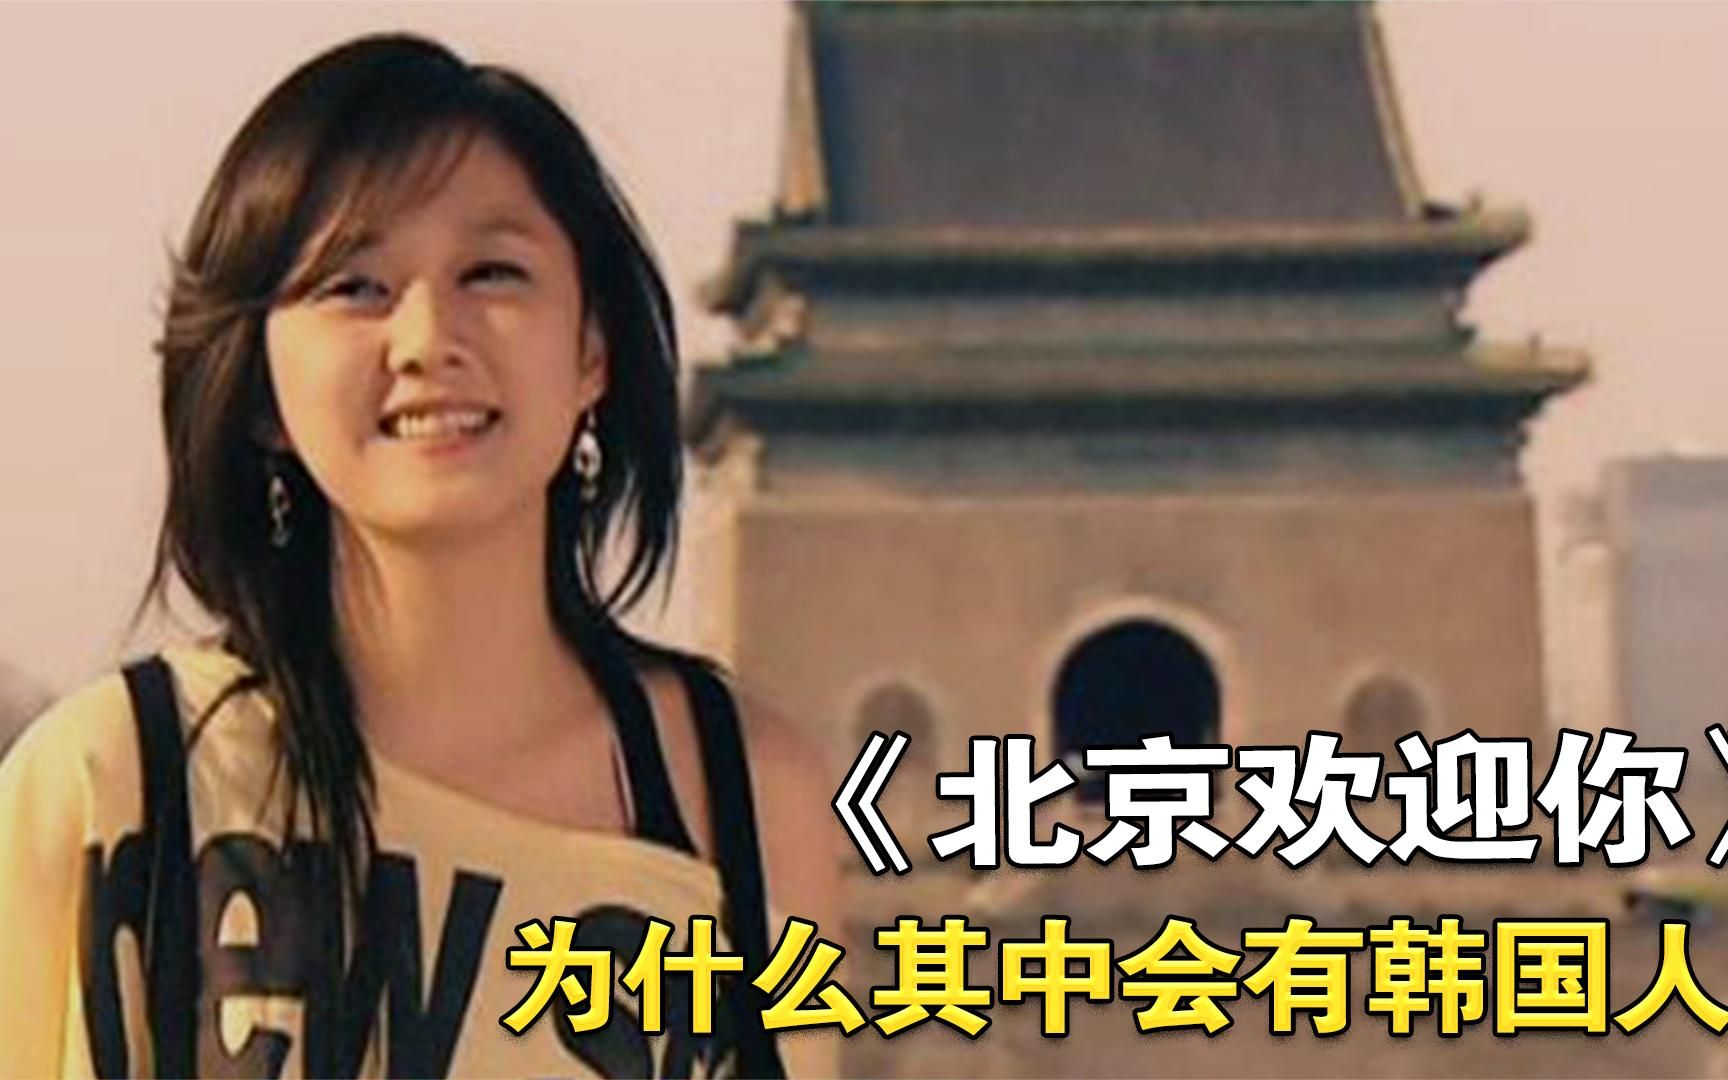 2008年，百位明星大合唱《北京欢迎你》，为何其中会有韩国人？